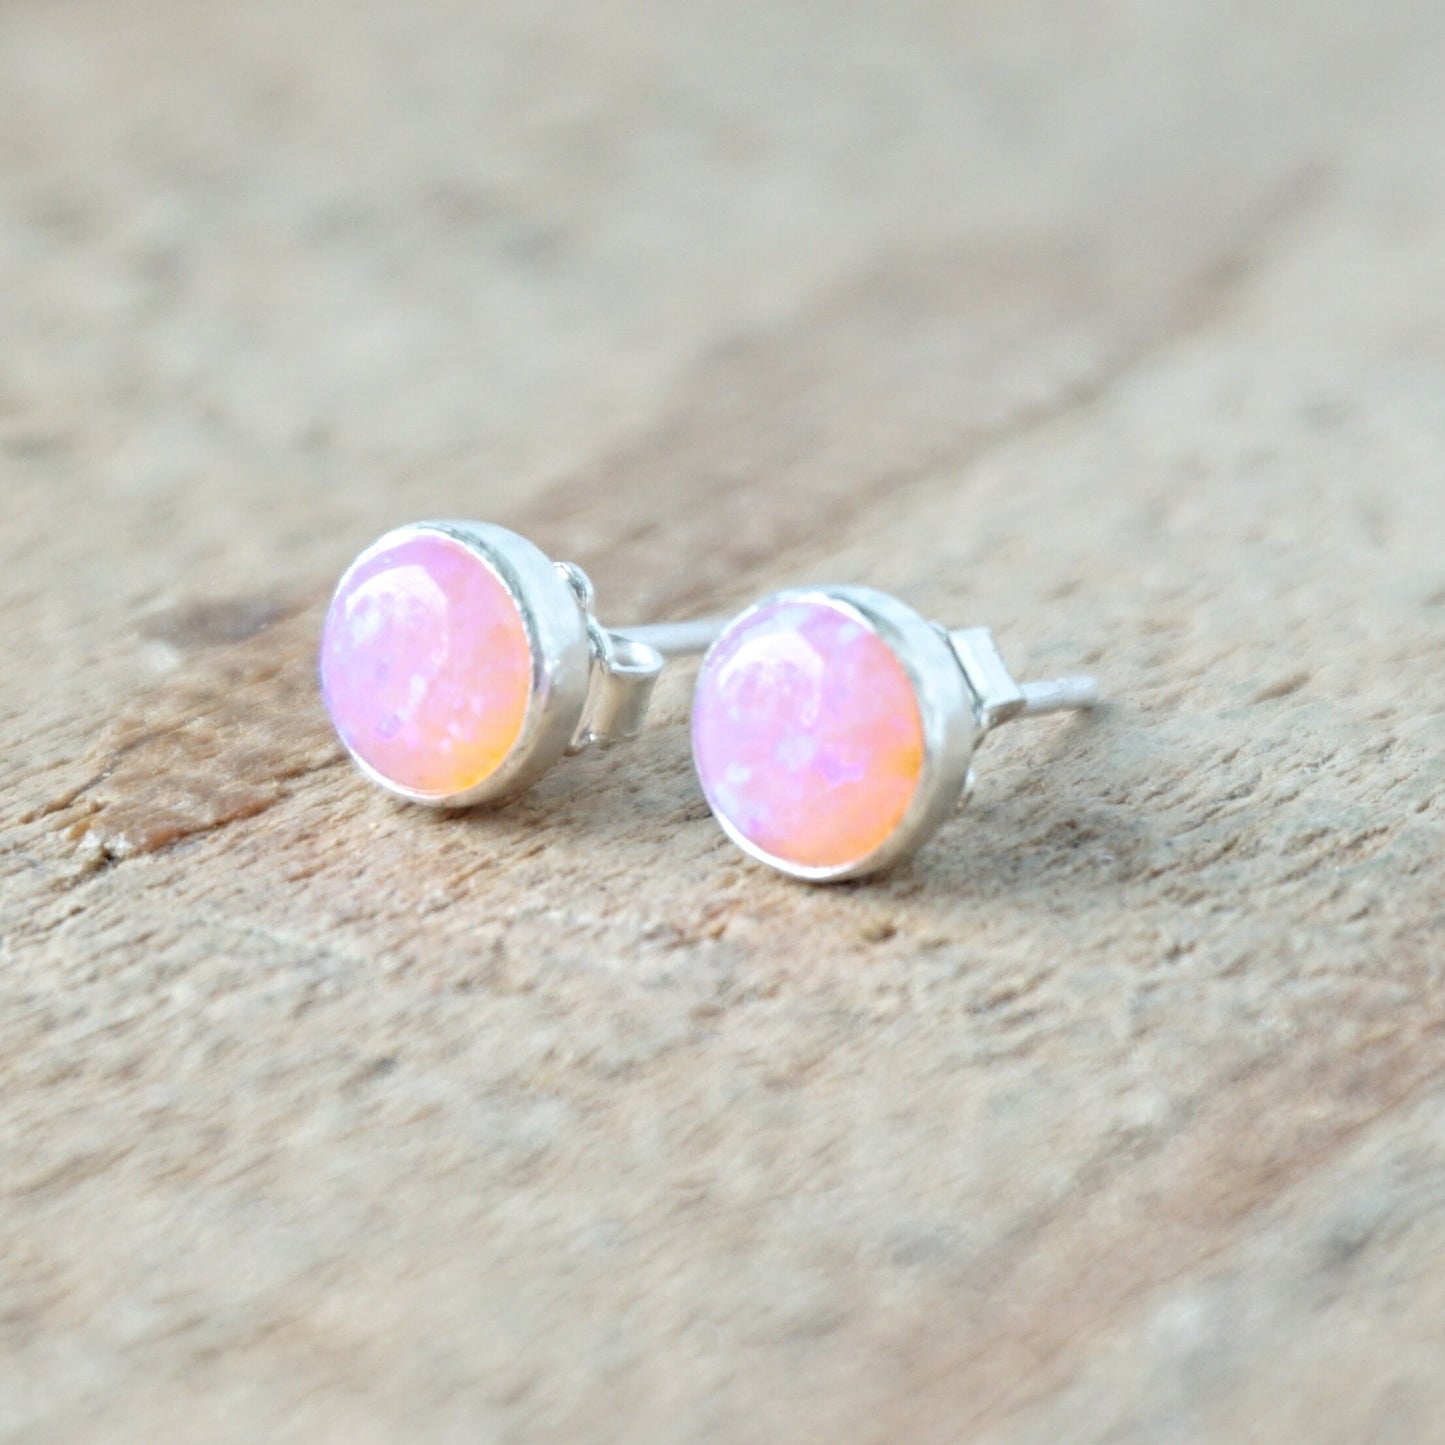 Light Pink Aura Opal Stud Earrings, 6mm - Cultured Opal Earrings, Cultured Opal Jewelry, Sterling Silver Earrings